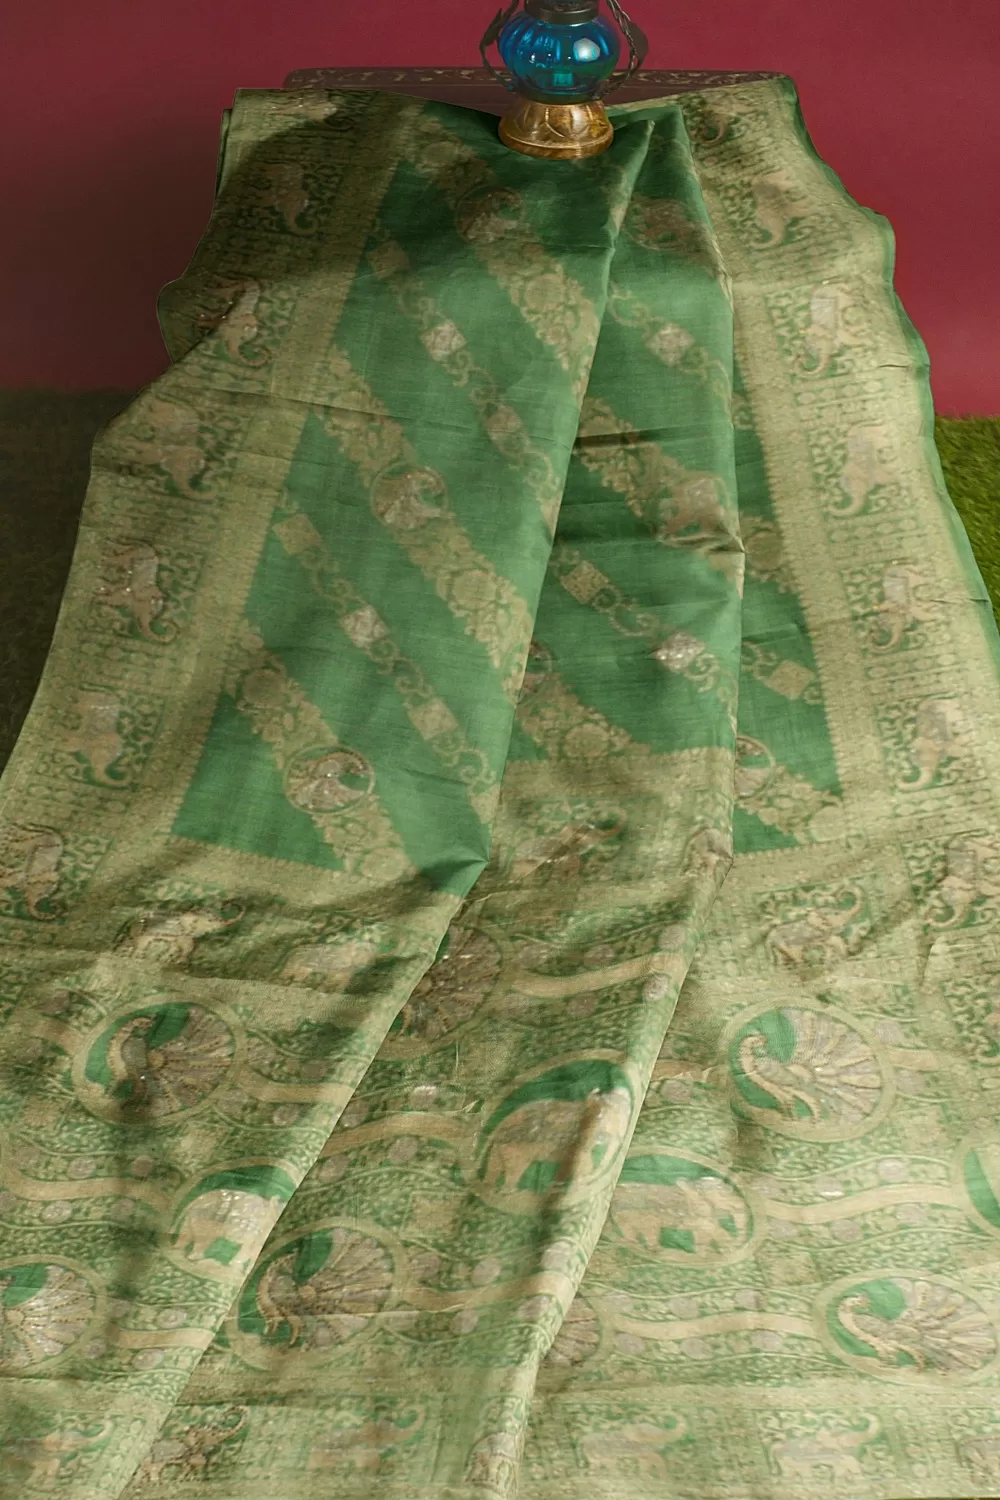 Mungiya Green Soft Silk Sarees